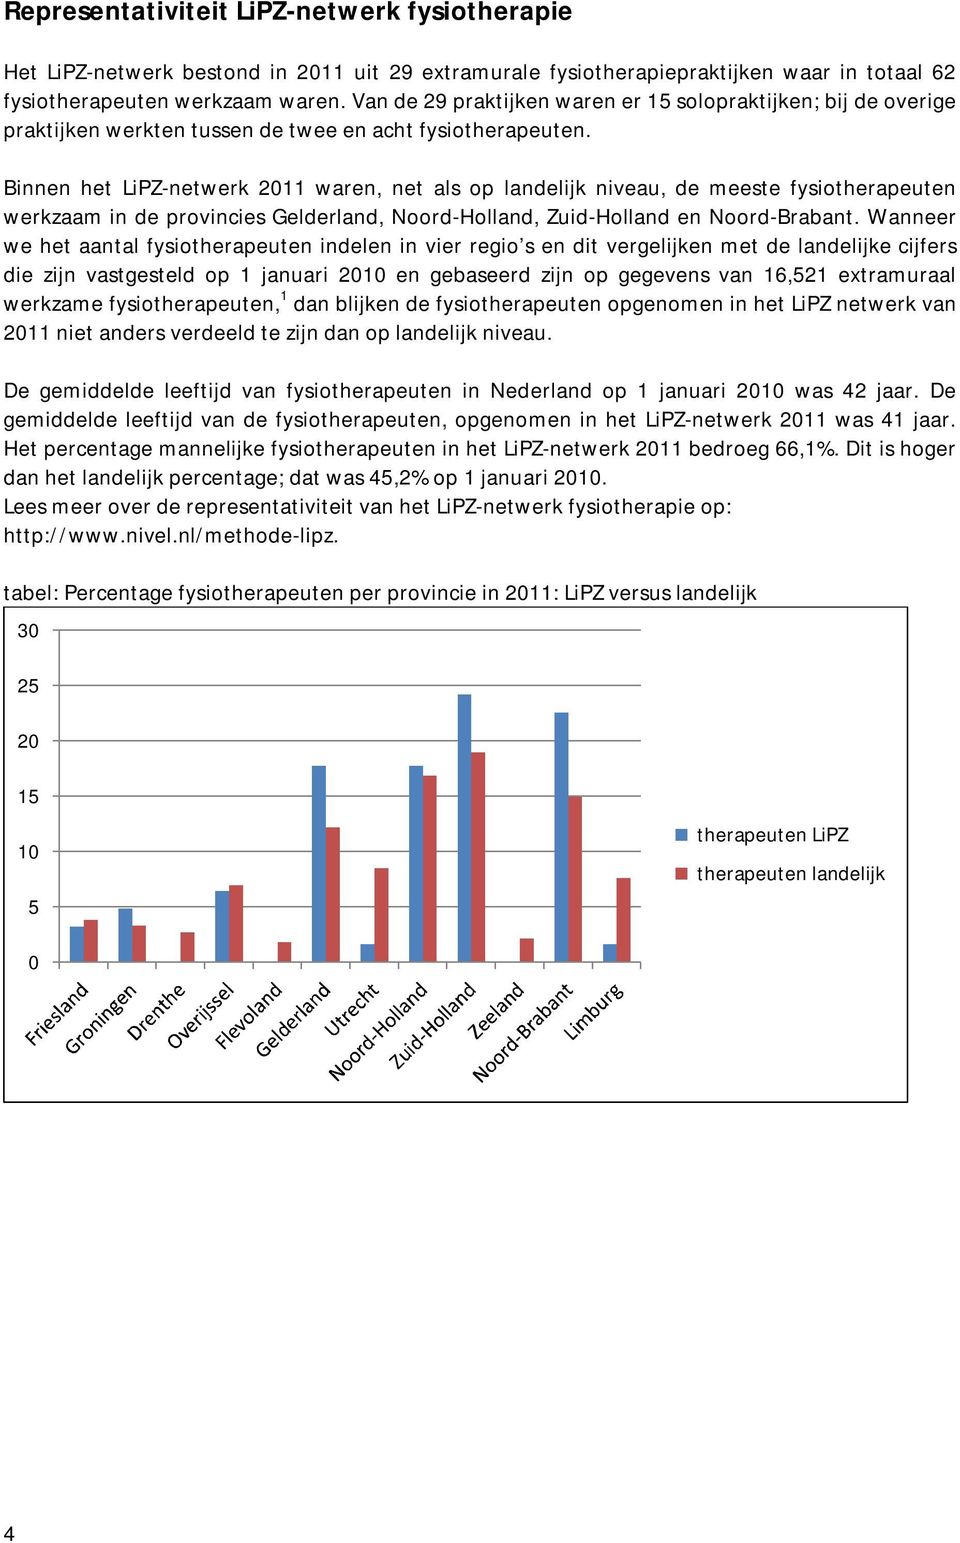 Binnen het LiPZ-netwerk 2011 waren, net als op landelijk niveau, de meeste fysiotherapeuten werkzaam in de provincies Gelderland, Noord-Holland, Zuid-Holland en Noord-Brabant.